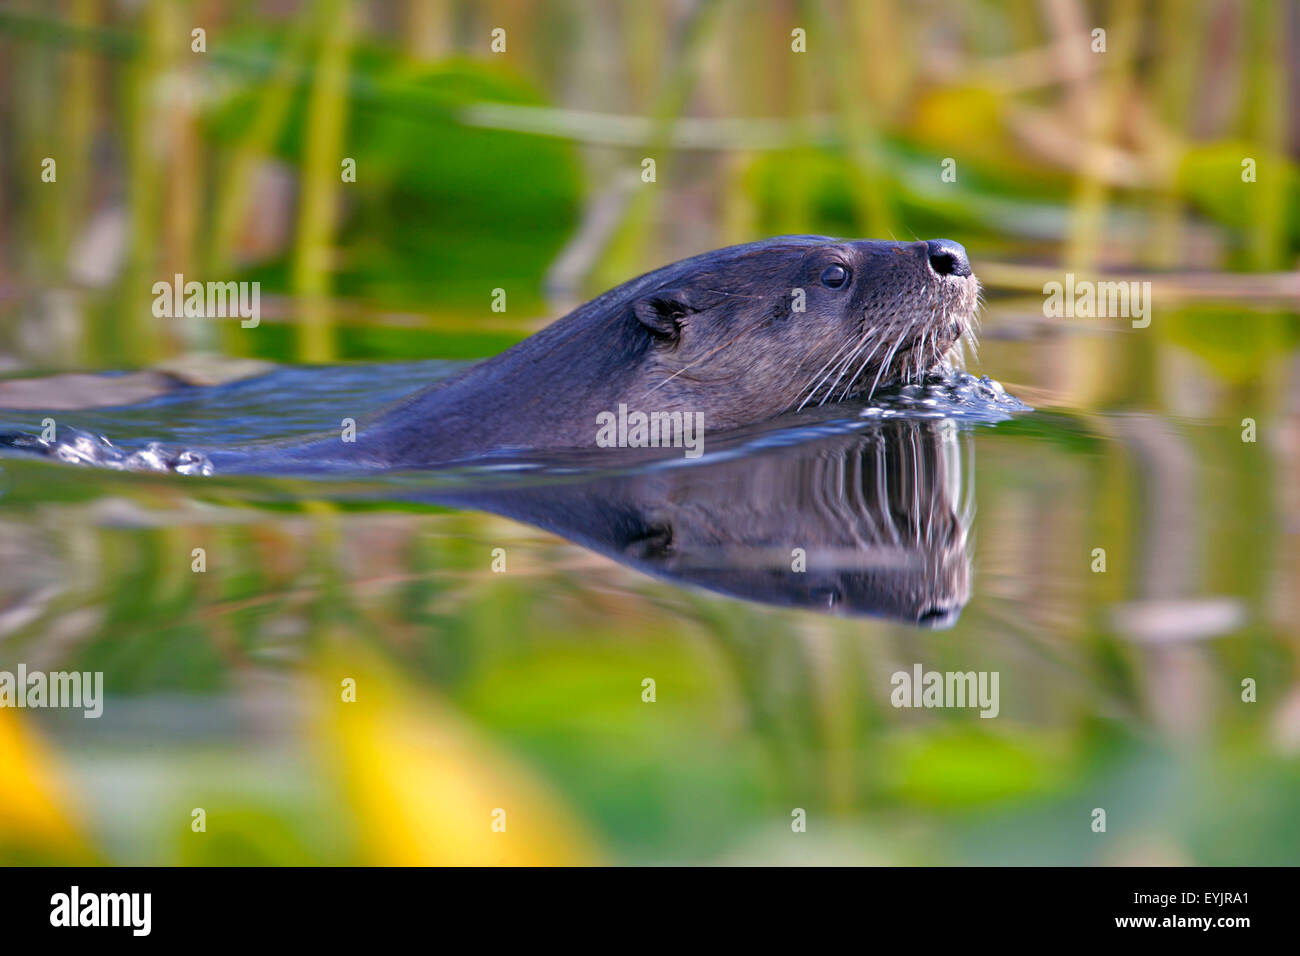 River Otter schwimmt im See, Großmaul reflektiert im Wasser. Stockfoto